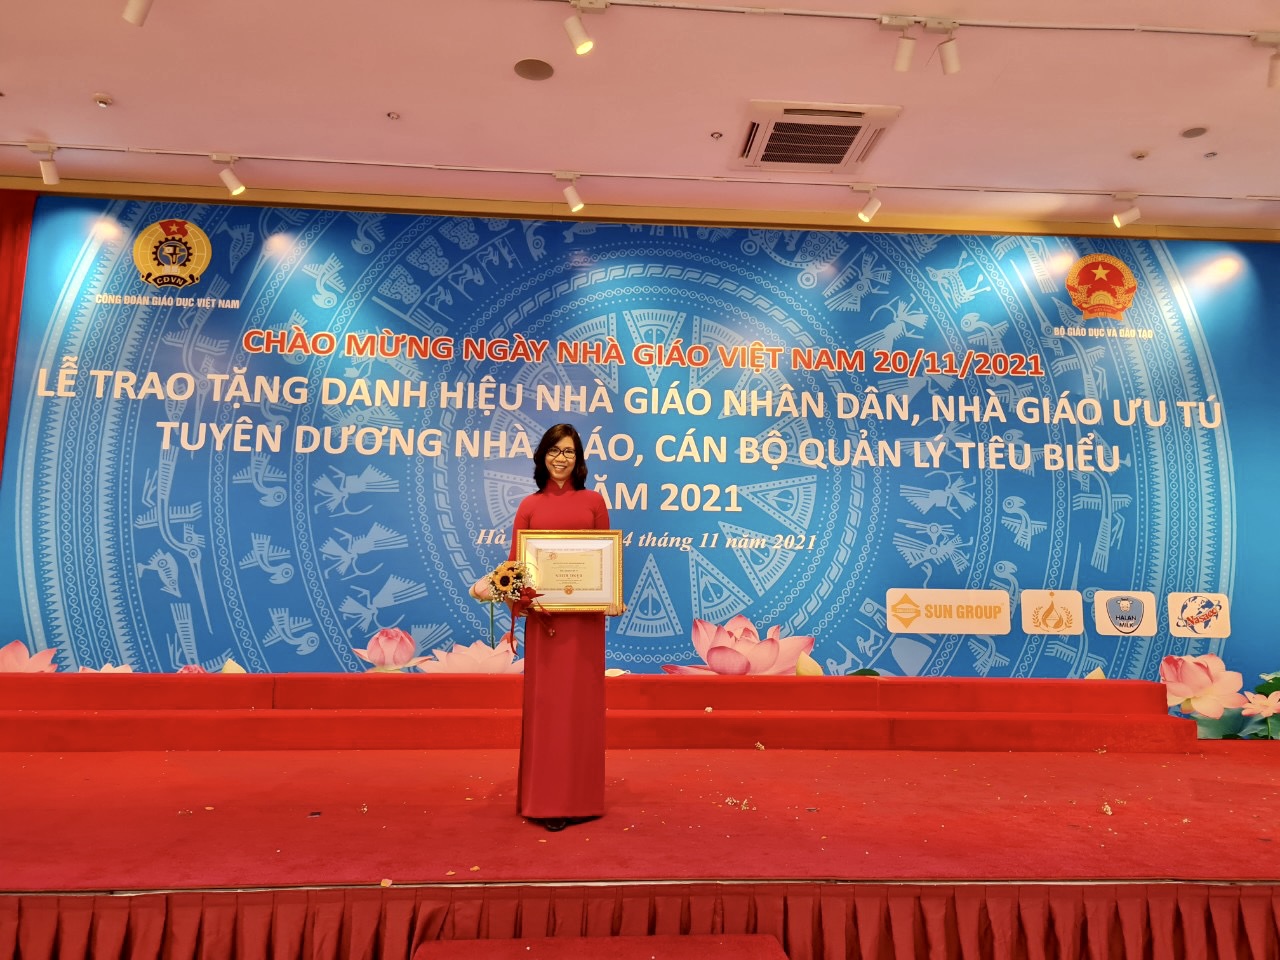 Cô Bùi Minh Tâm là một trong hai cán bộ quản lý tiêu biểu TPHCM năm 2021 được Bộ trưởng Bộ GD-ĐT tặng bằng khen